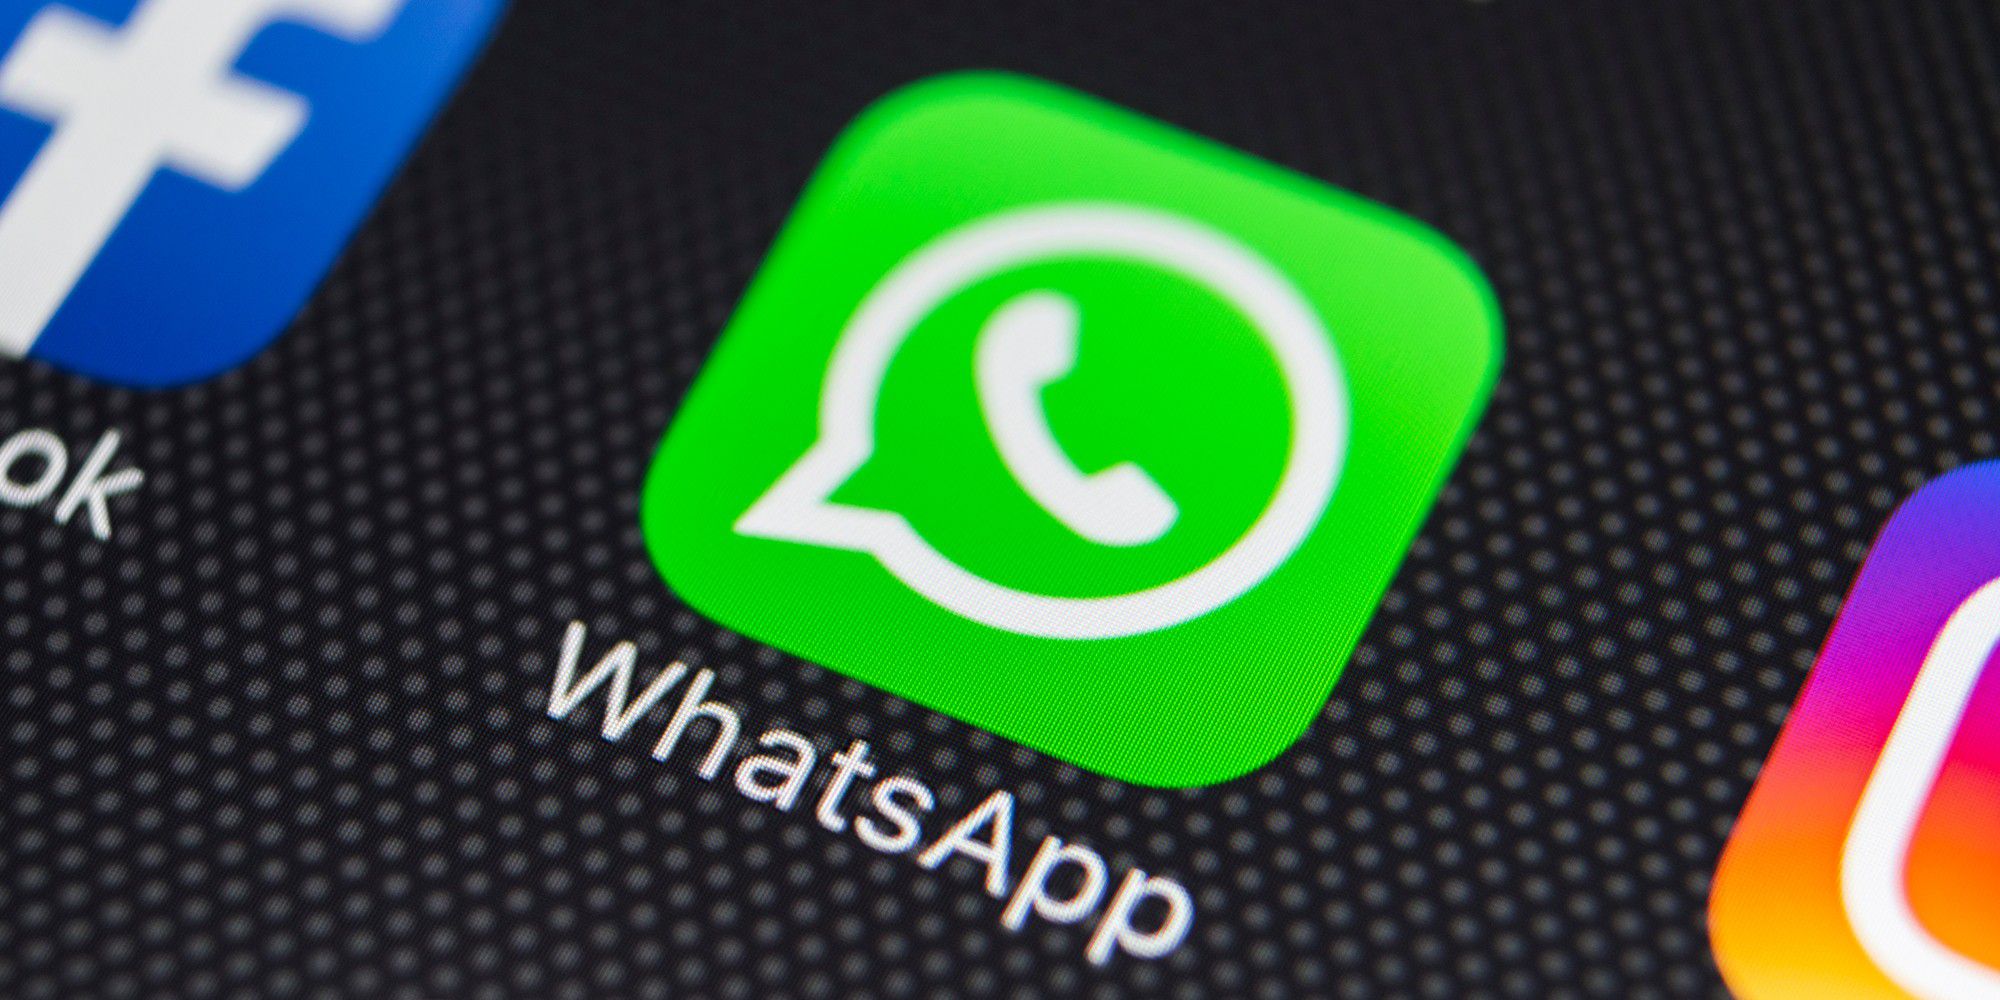 Whatsapp statusmeldungen sehen